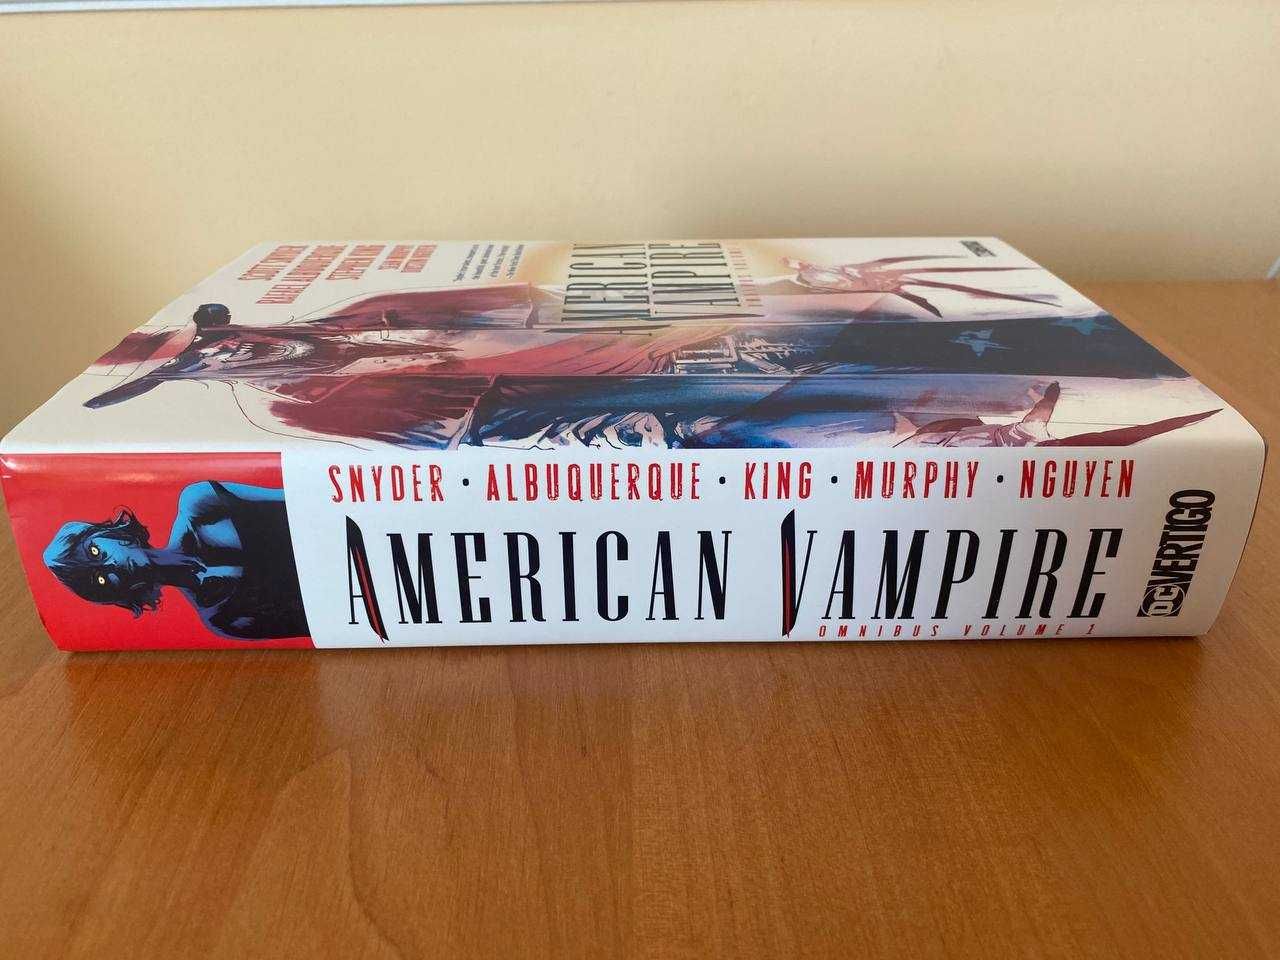 American Vampire (omnibus, комікс)